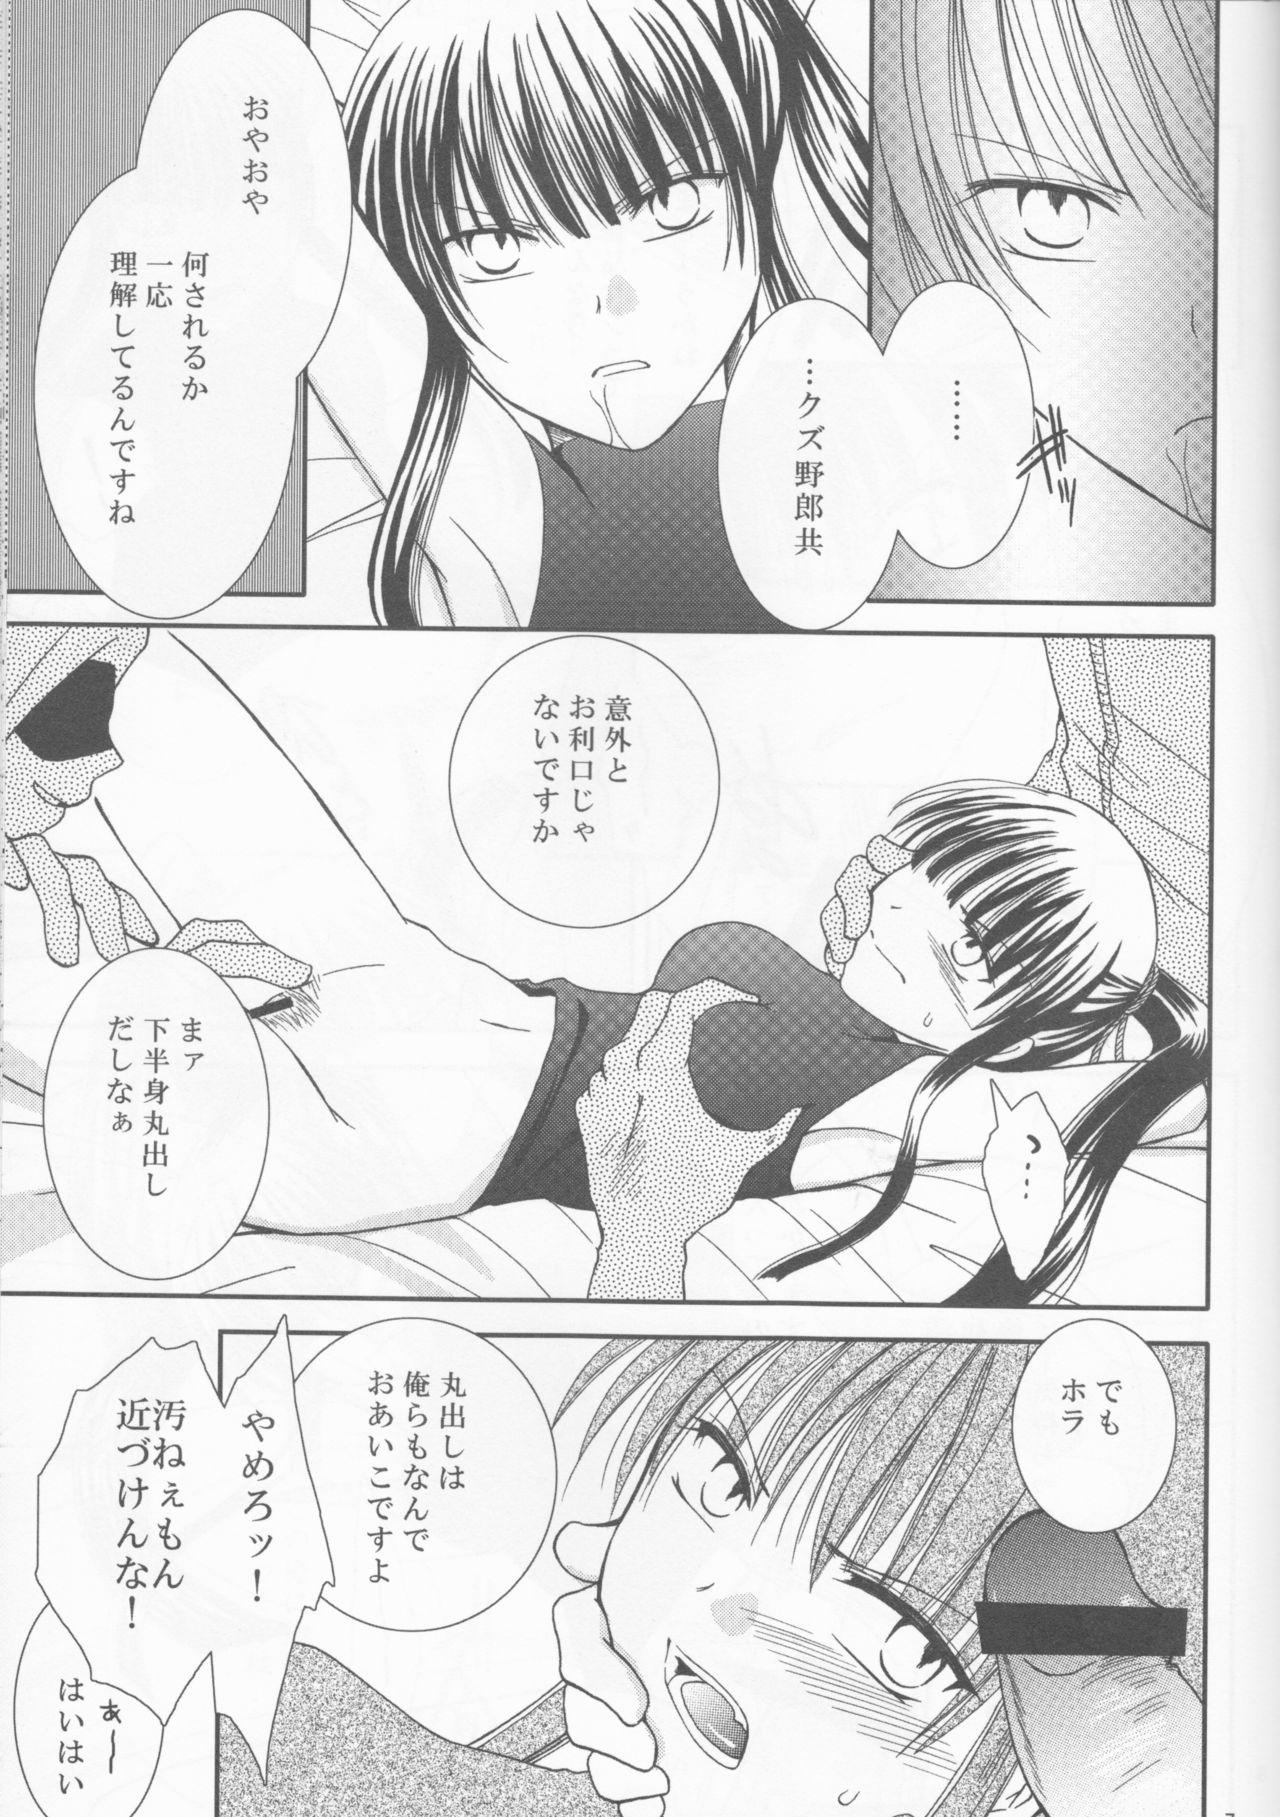 Amigos Mugen Yuugi - D.gray-man Lesbian - Page 7